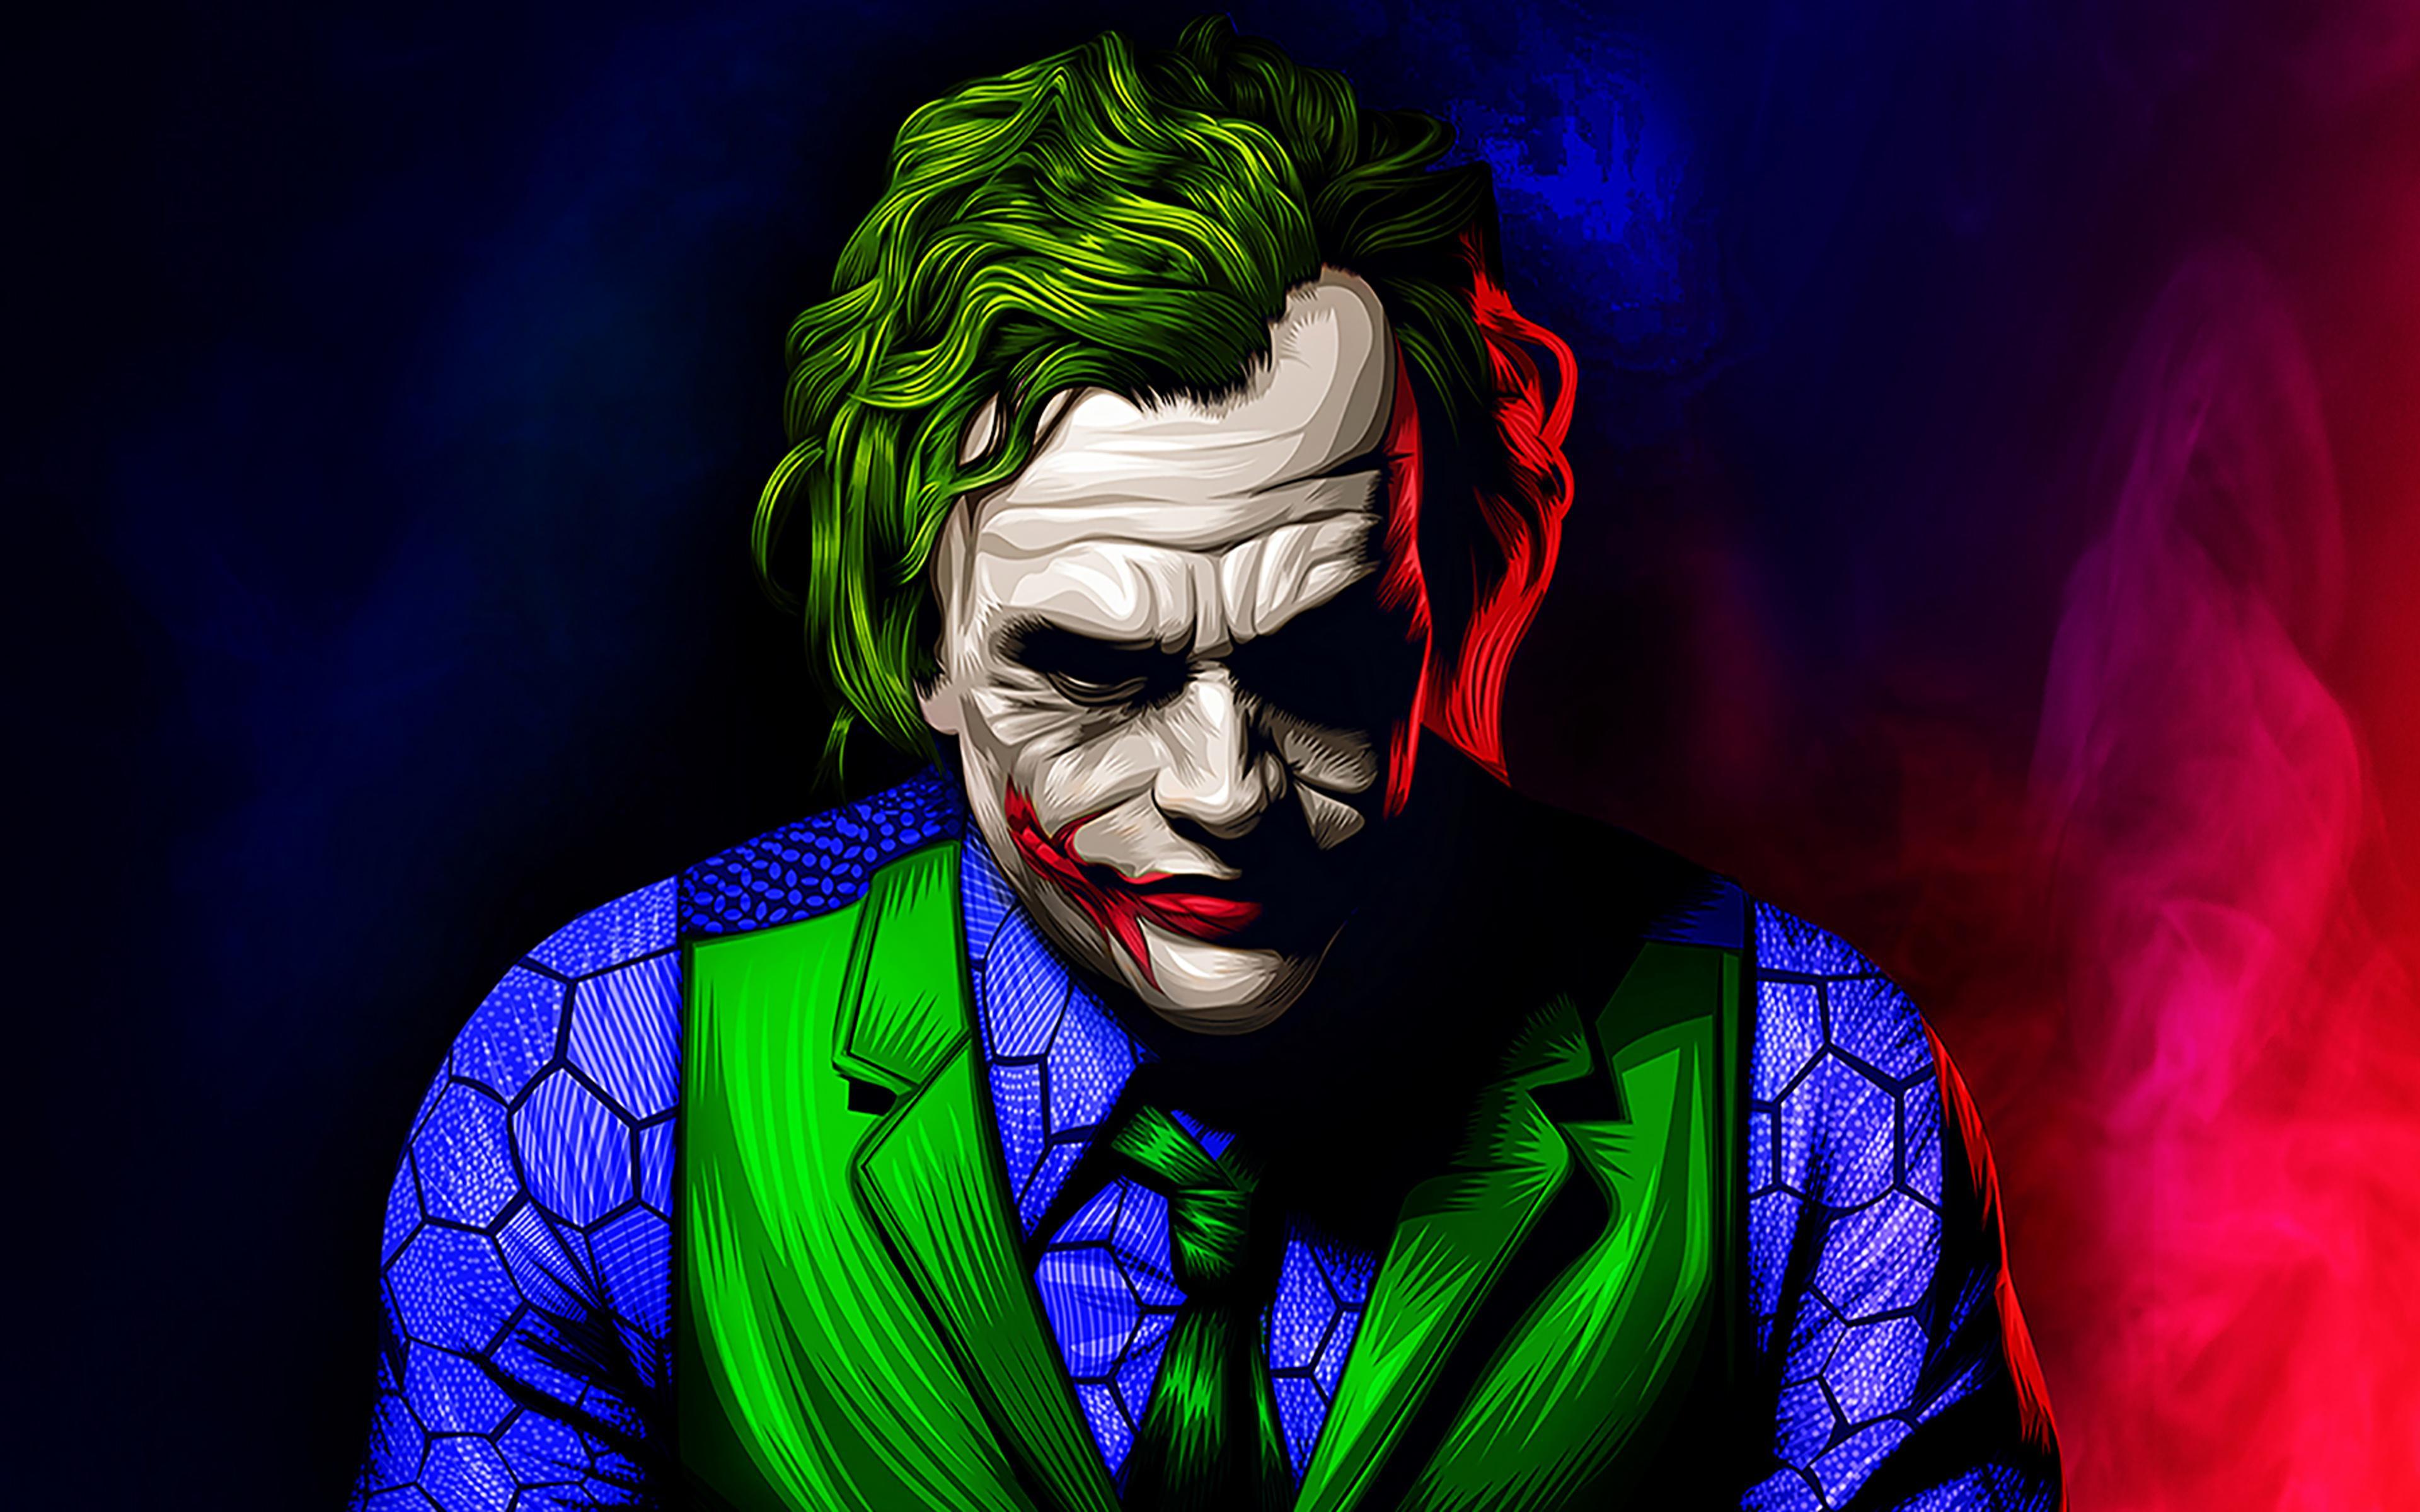 Joker 4K Ultra HD Wallpapers - Top Free Joker 4K Ultra HD ...